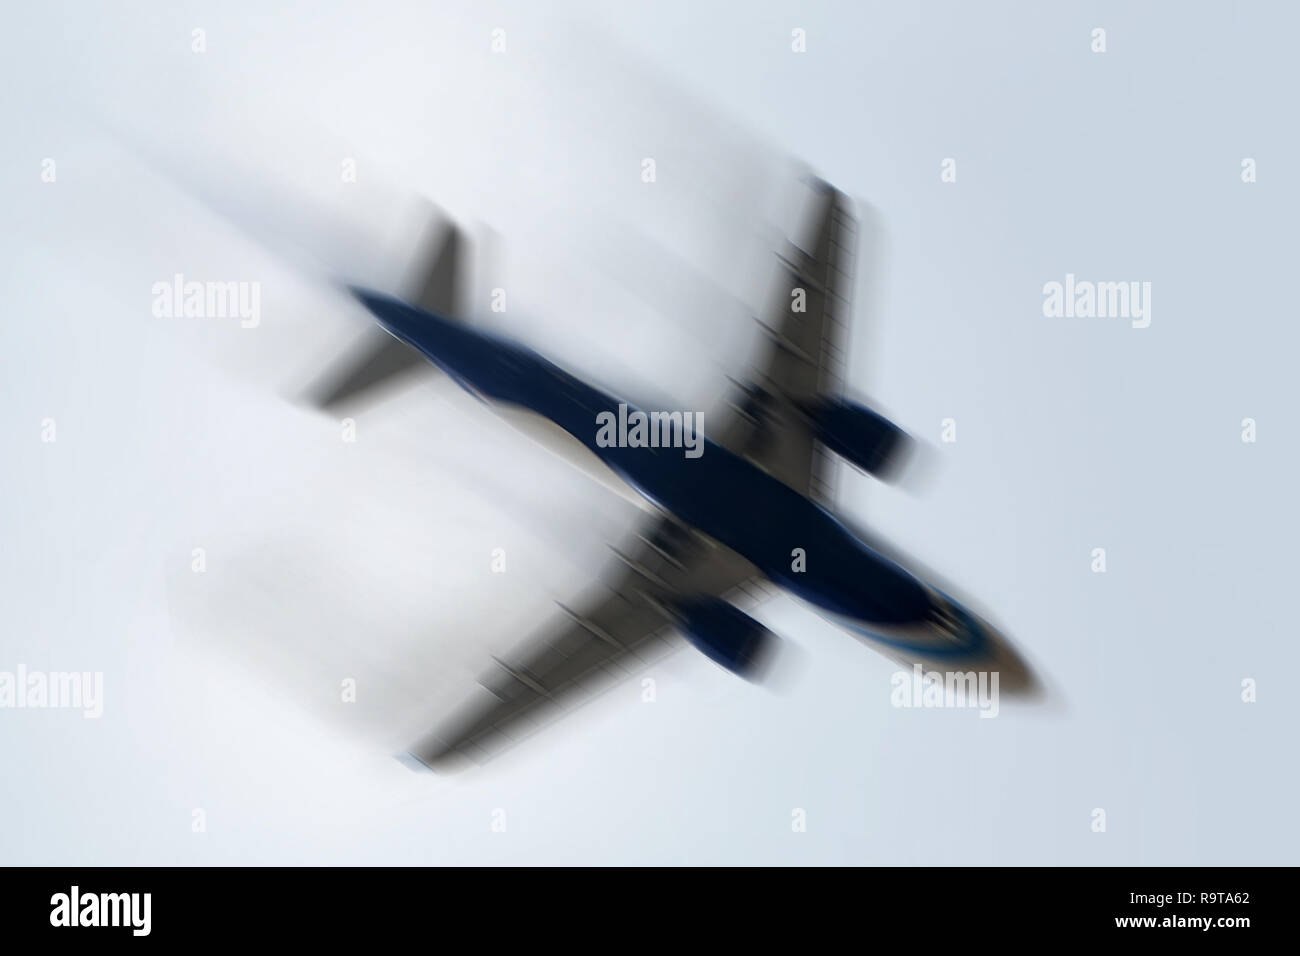 Avec l'explosion des avions volant à aero engine juste avant l'accident d'avion dans le ciel et la motion. Avion avec des problèmes : Concept - Blurred motion. Banque D'Images